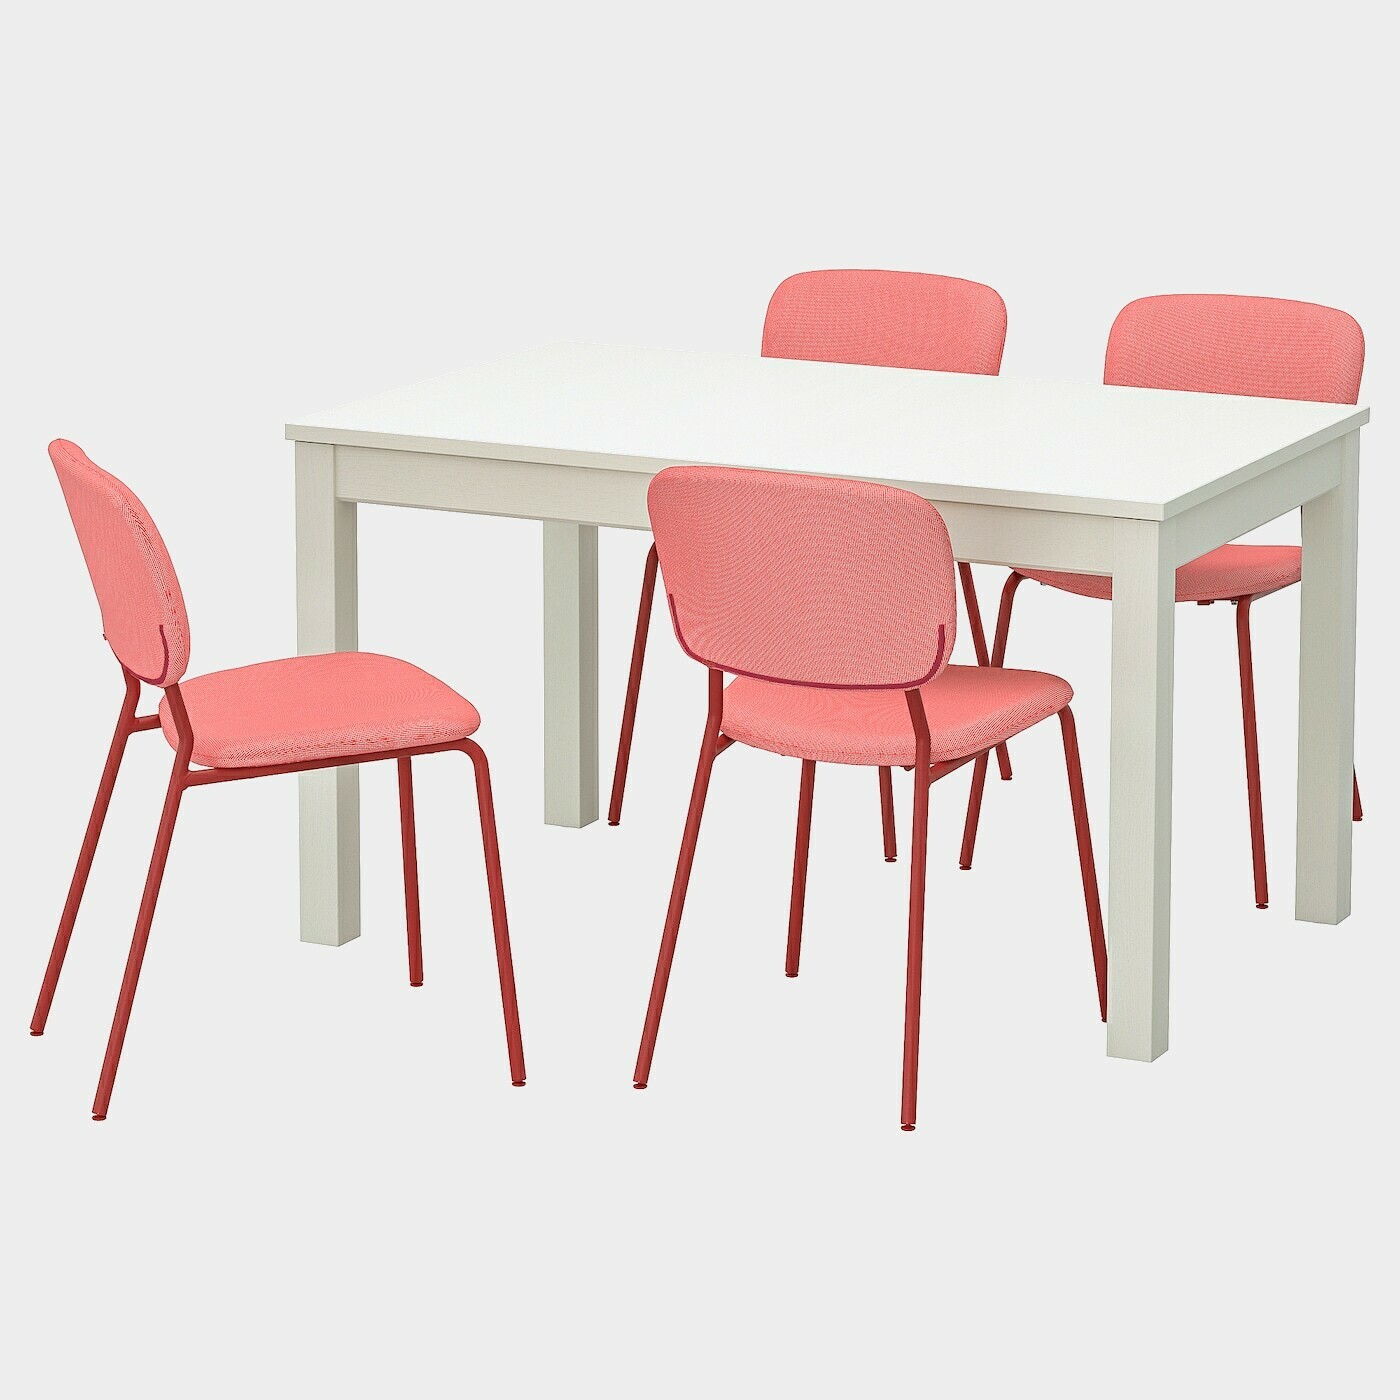 LANEBERG / KARLJAN Tisch und 4 Stühle  - Essplatzgruppe - Möbel Ideen für dein Zuhause von Home Trends. Möbel Trends von Social Media Influencer für dein Skandi Zuhause.